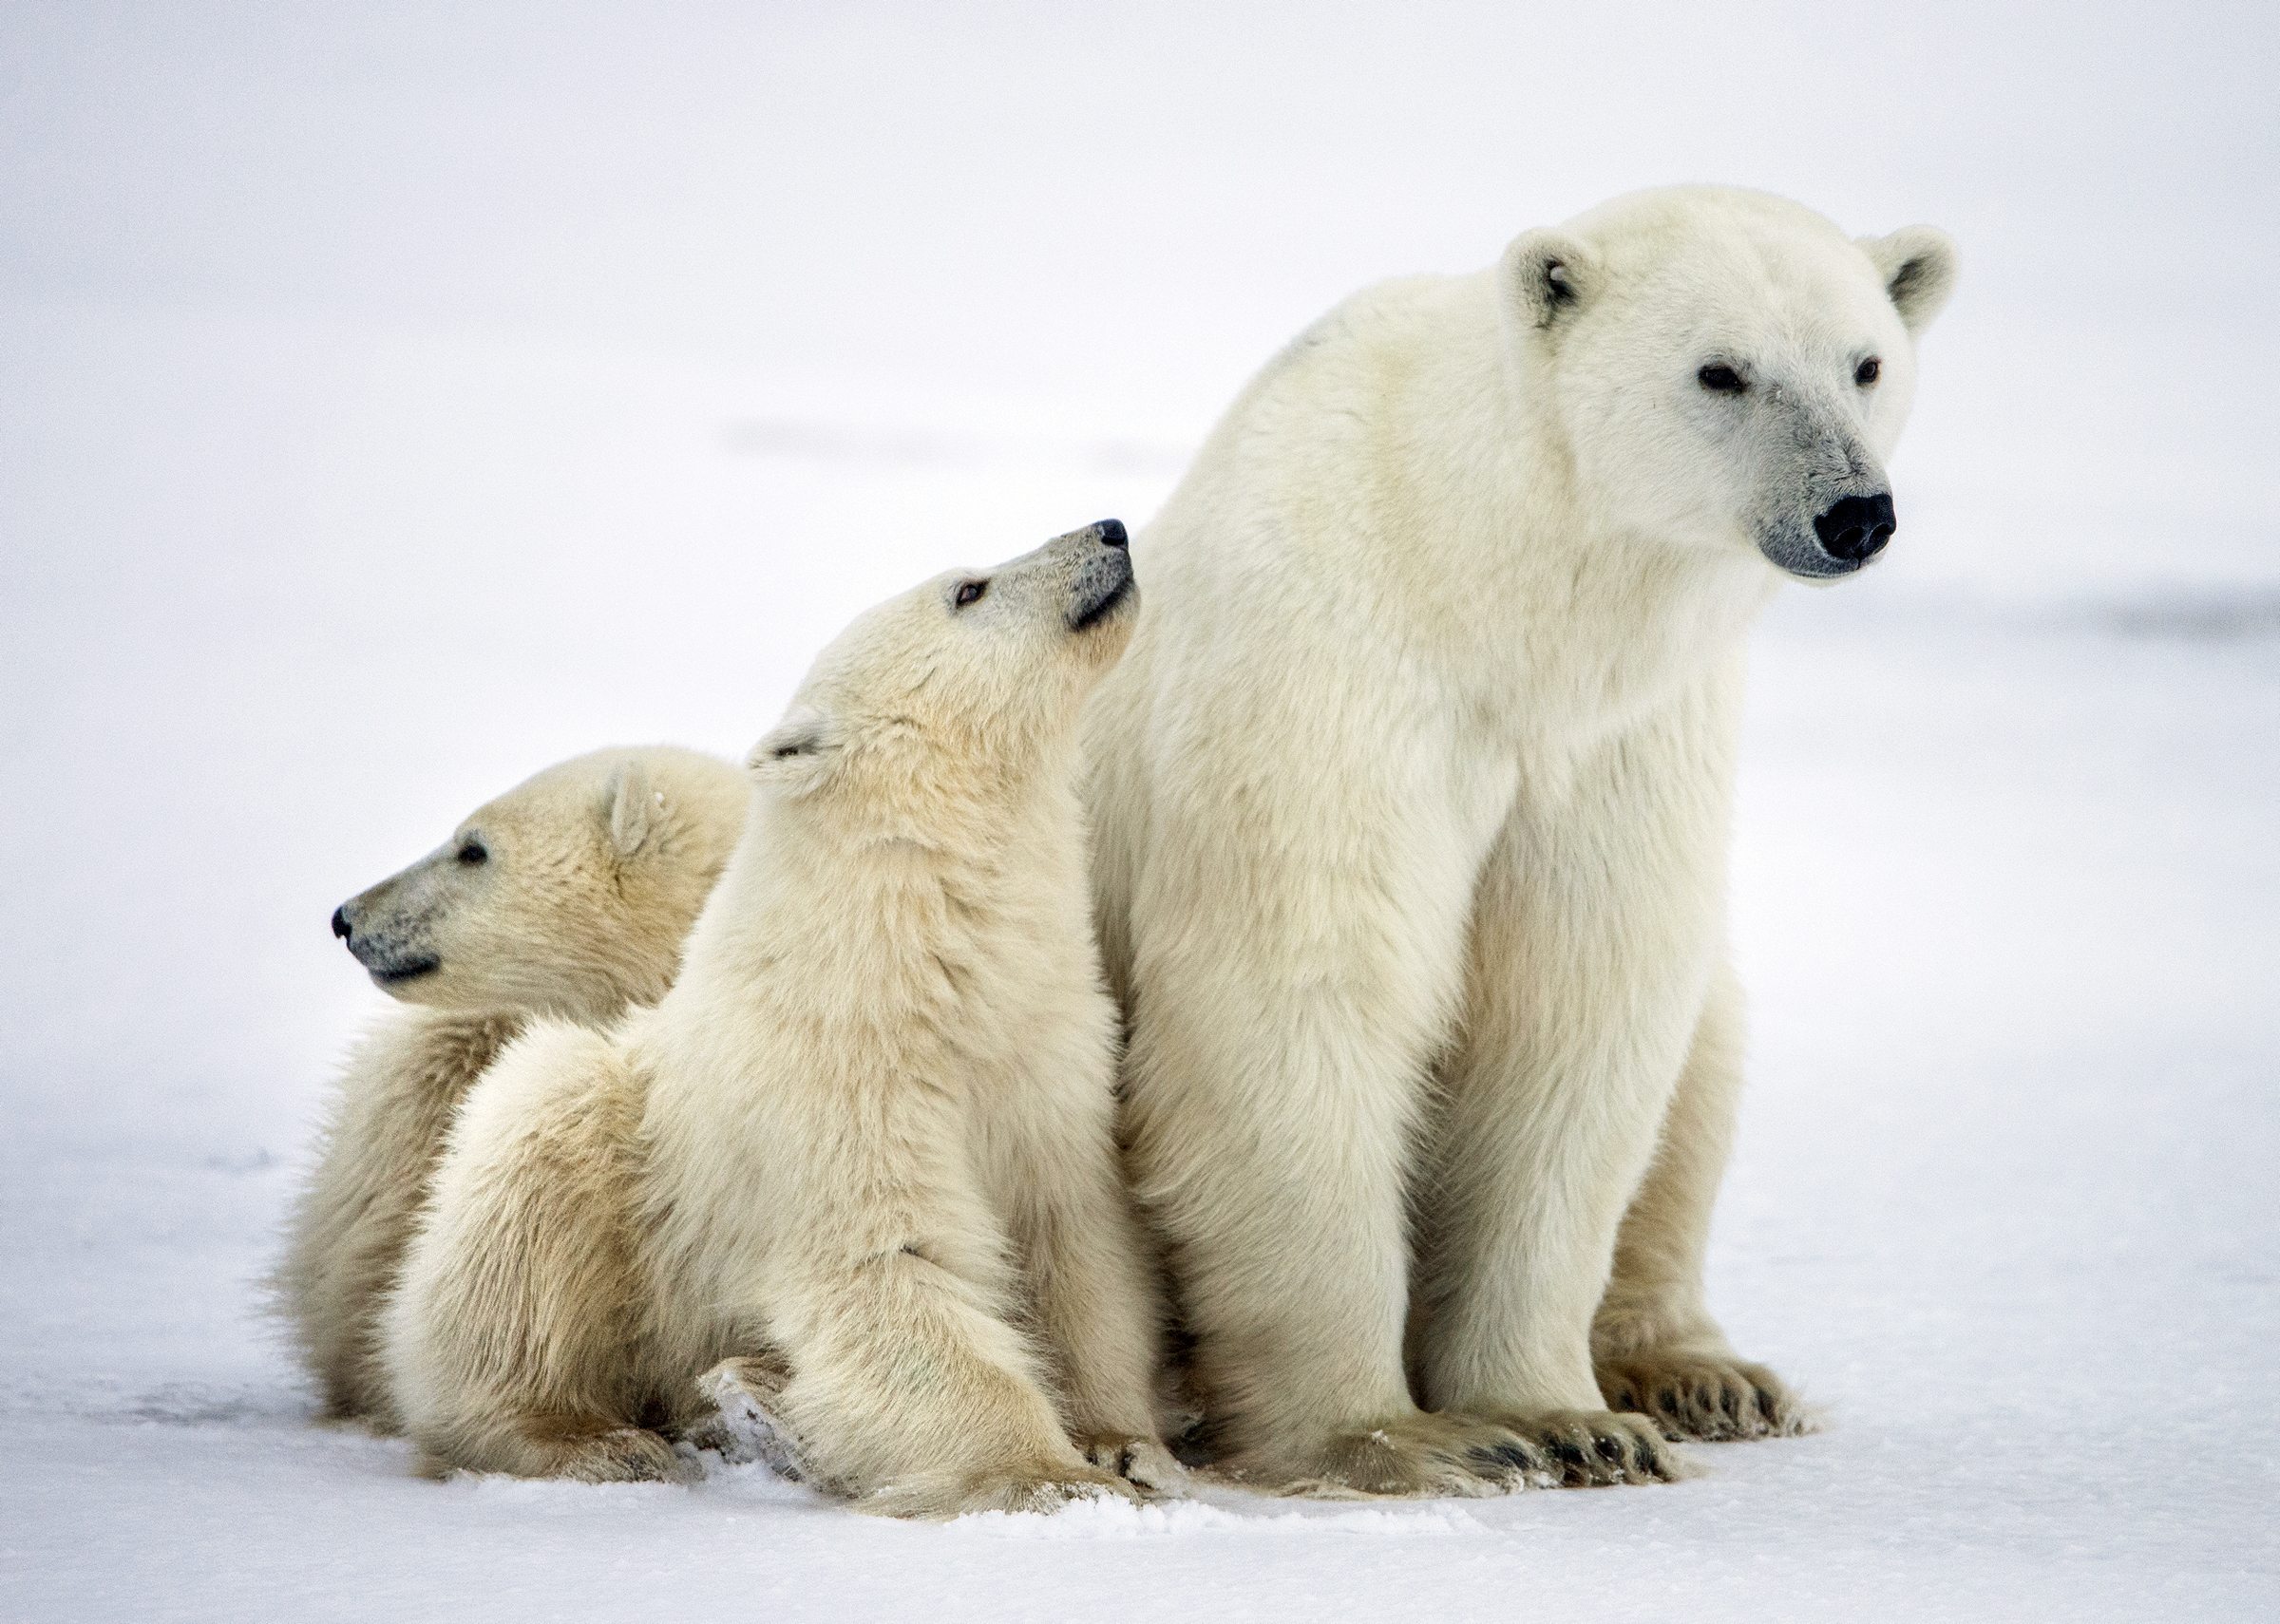 Polar she-bear with cubs. A Polar she-bear with two small bear cubs on the snow. The polar bear (Ursus maritimus)